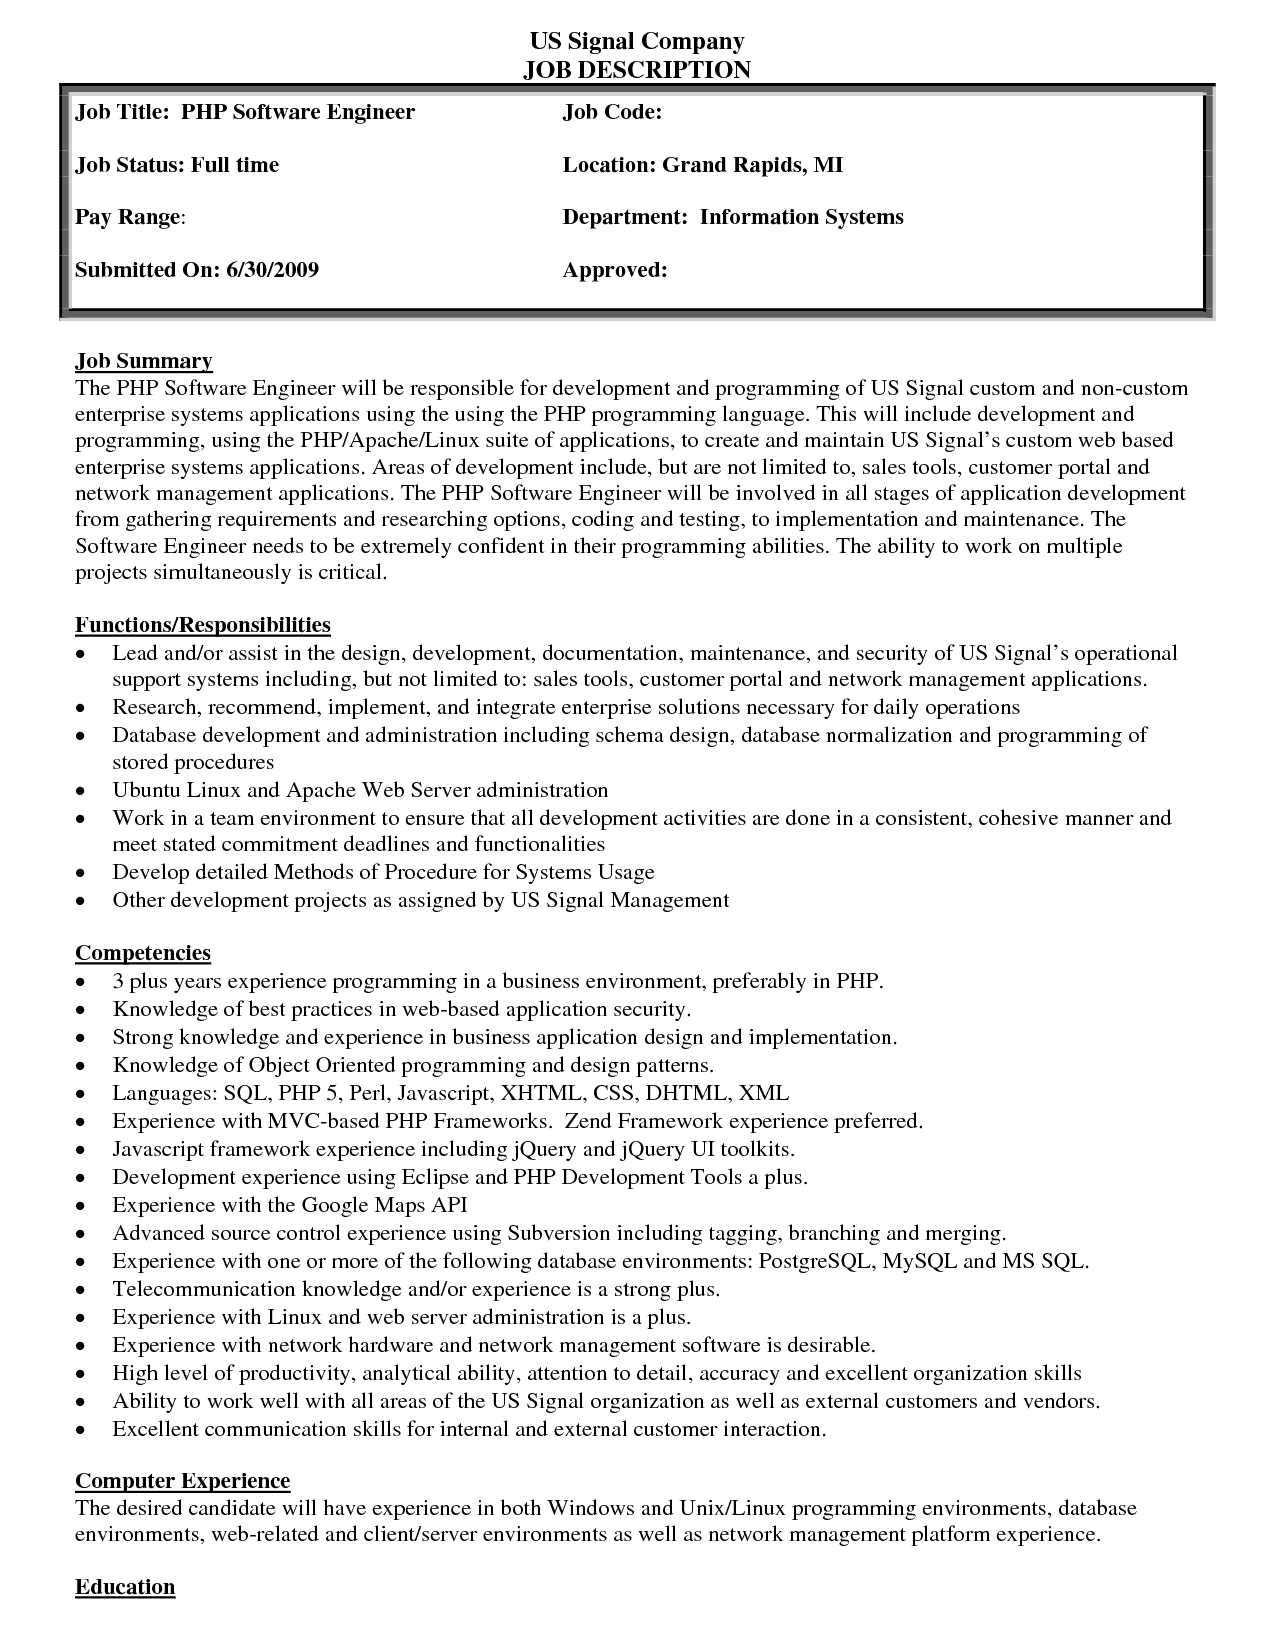 education project officer job description